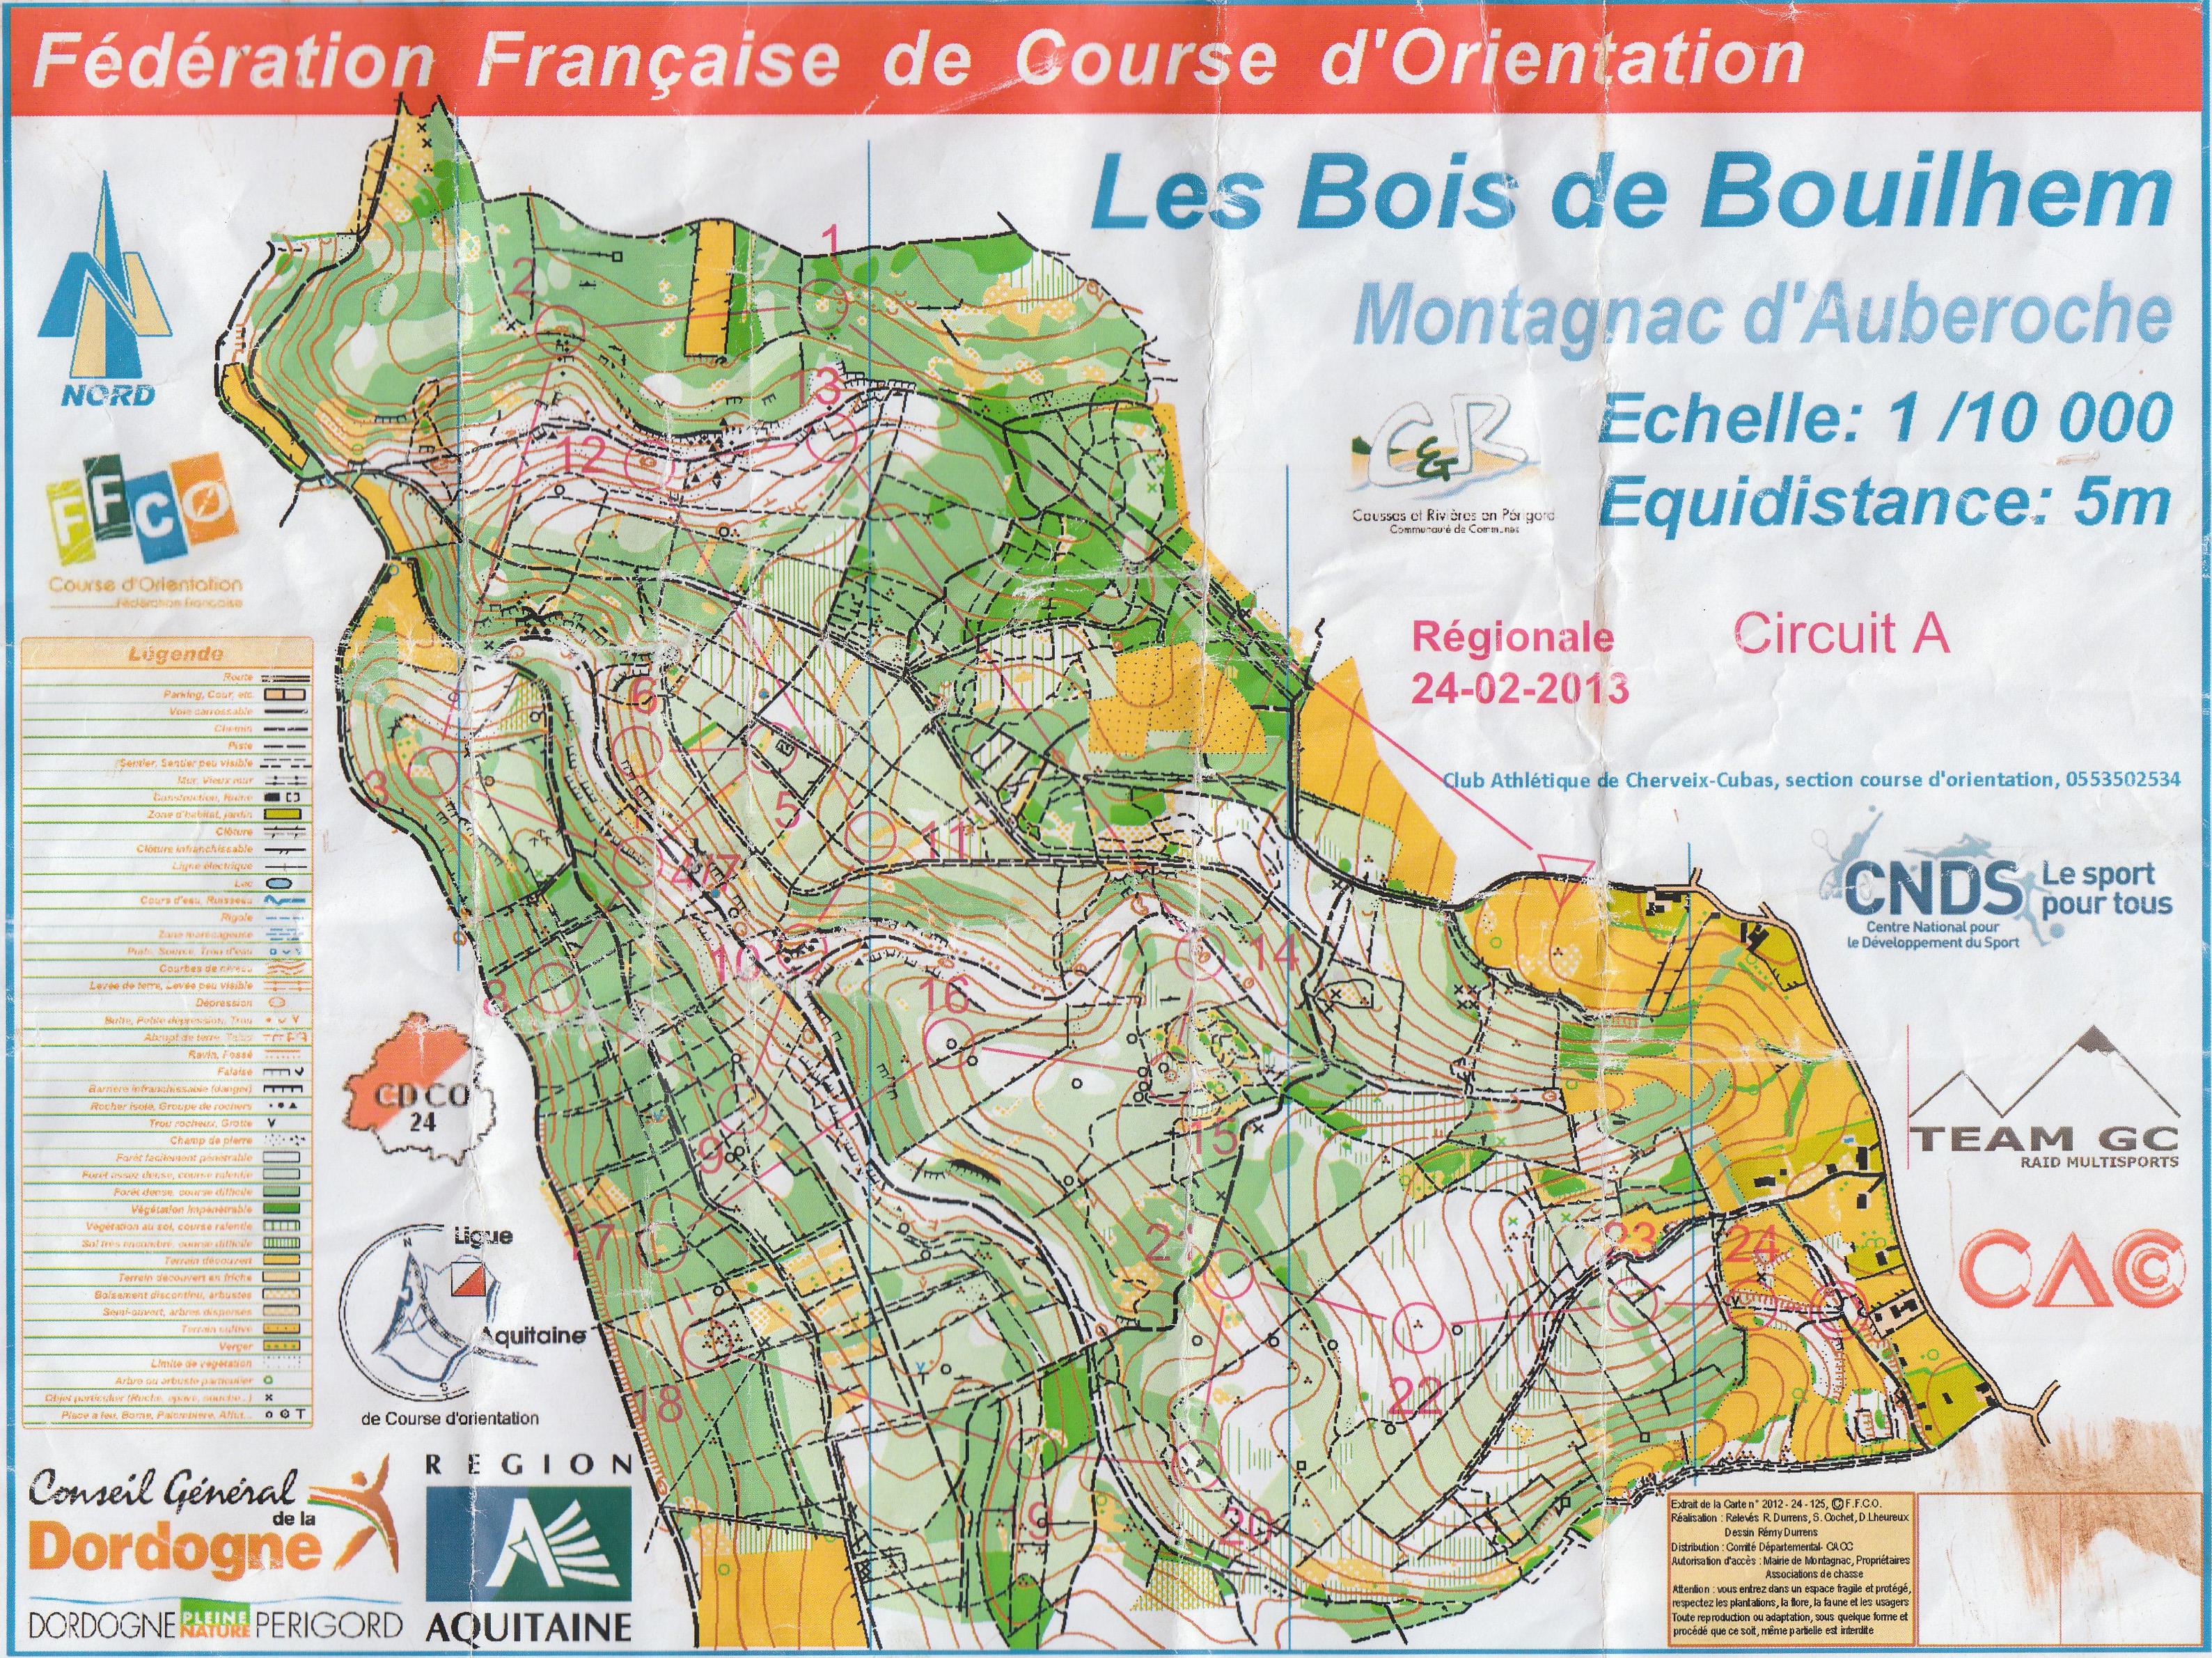 Régionale LD Aquitaine (24-02-2013)